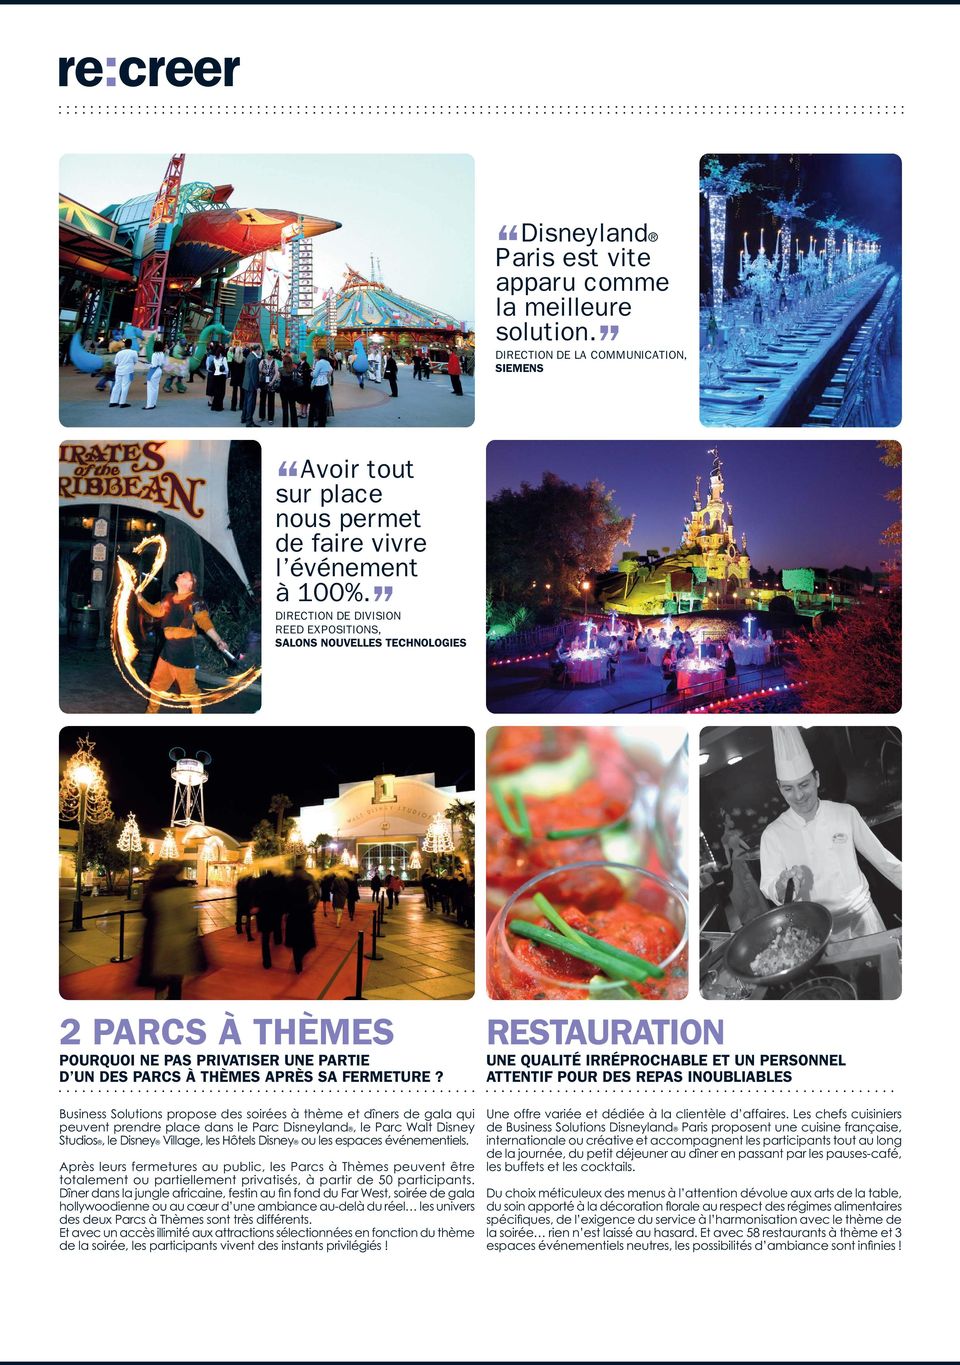 Business Solutions propose des soirées à thème et dîners de gala qui peuvent prendre place dans le Parc Disneyland, le Parc Walt Disney Studios, le Disney Village, les Hôtels Disney ou les espaces